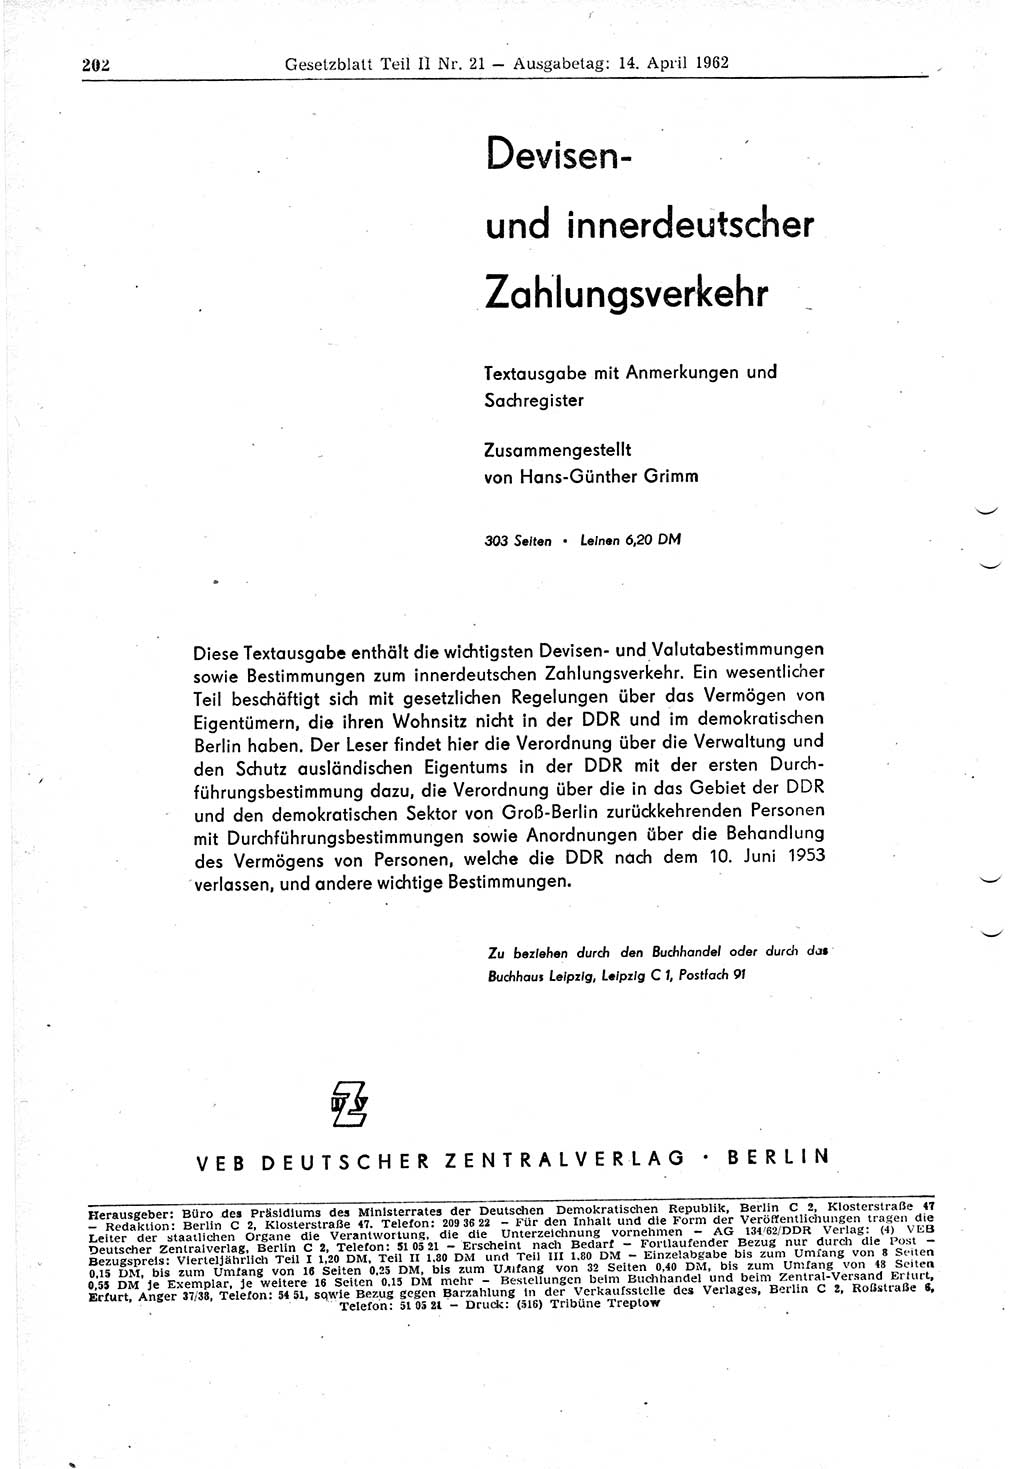 Gesetzblatt (GBl.) der Deutschen Demokratischen Republik (DDR) Teil ⅠⅠ 1962, Seite 202 (GBl. DDR ⅠⅠ 1962, S. 202)